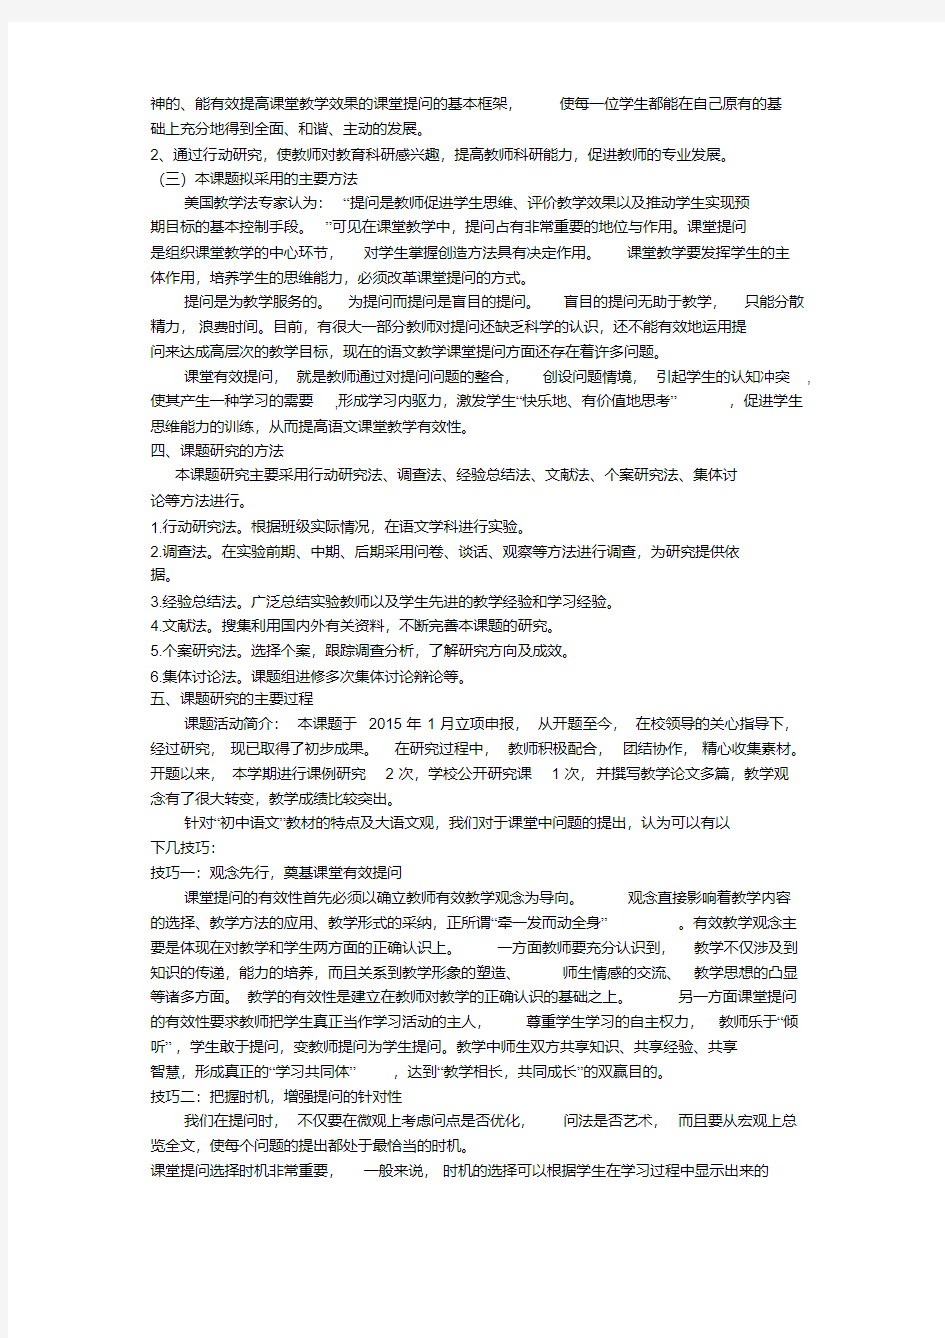 初中语文课堂提问技巧研究课题结题报告(20200523115359)